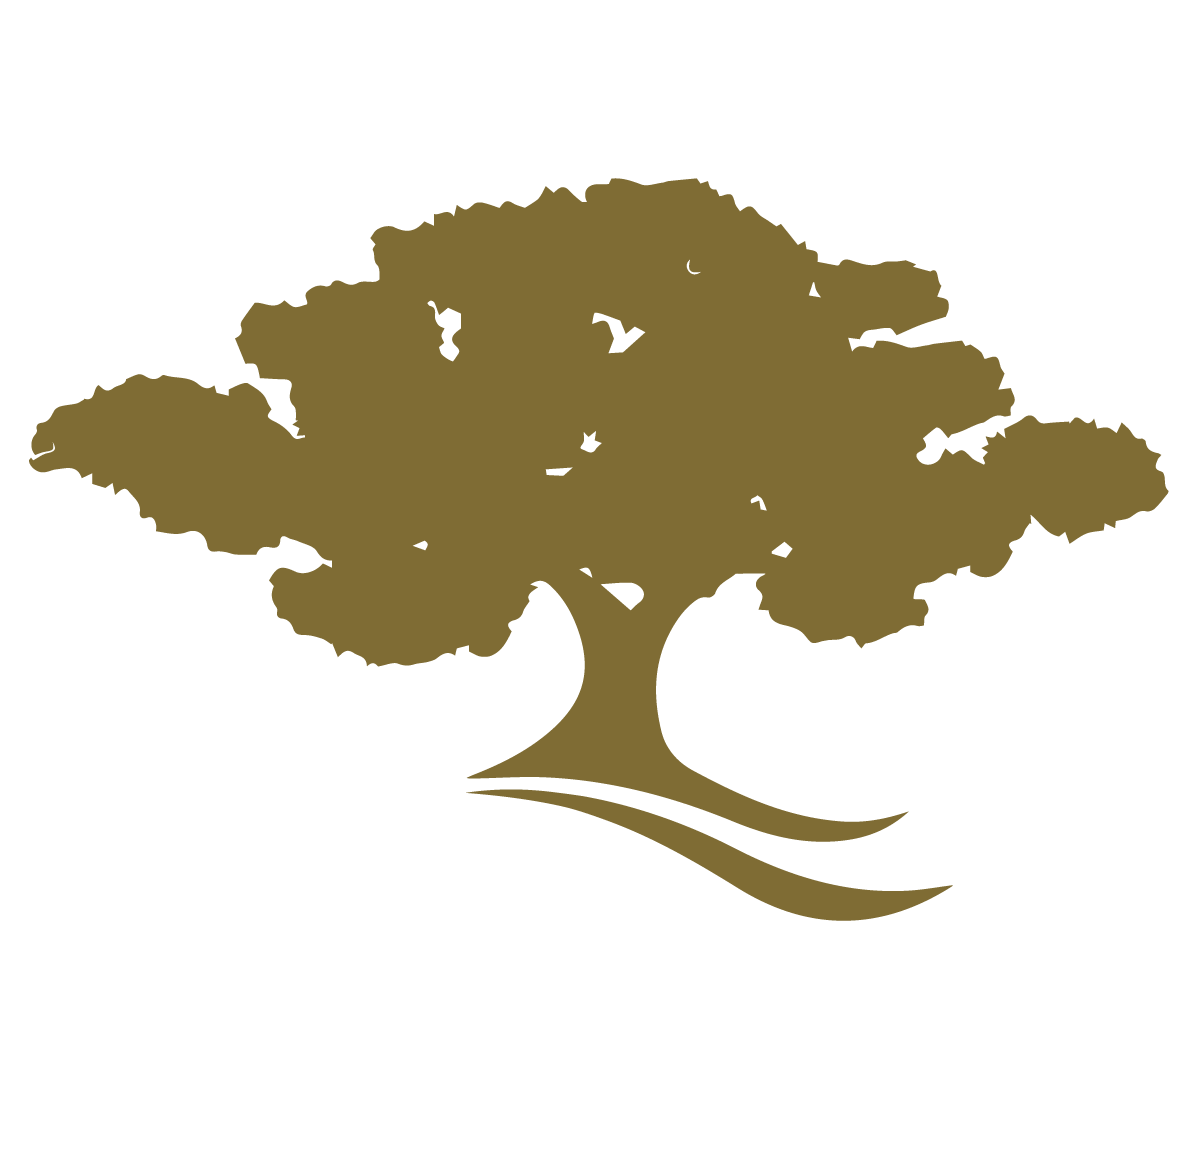 Club Hípico El Roble